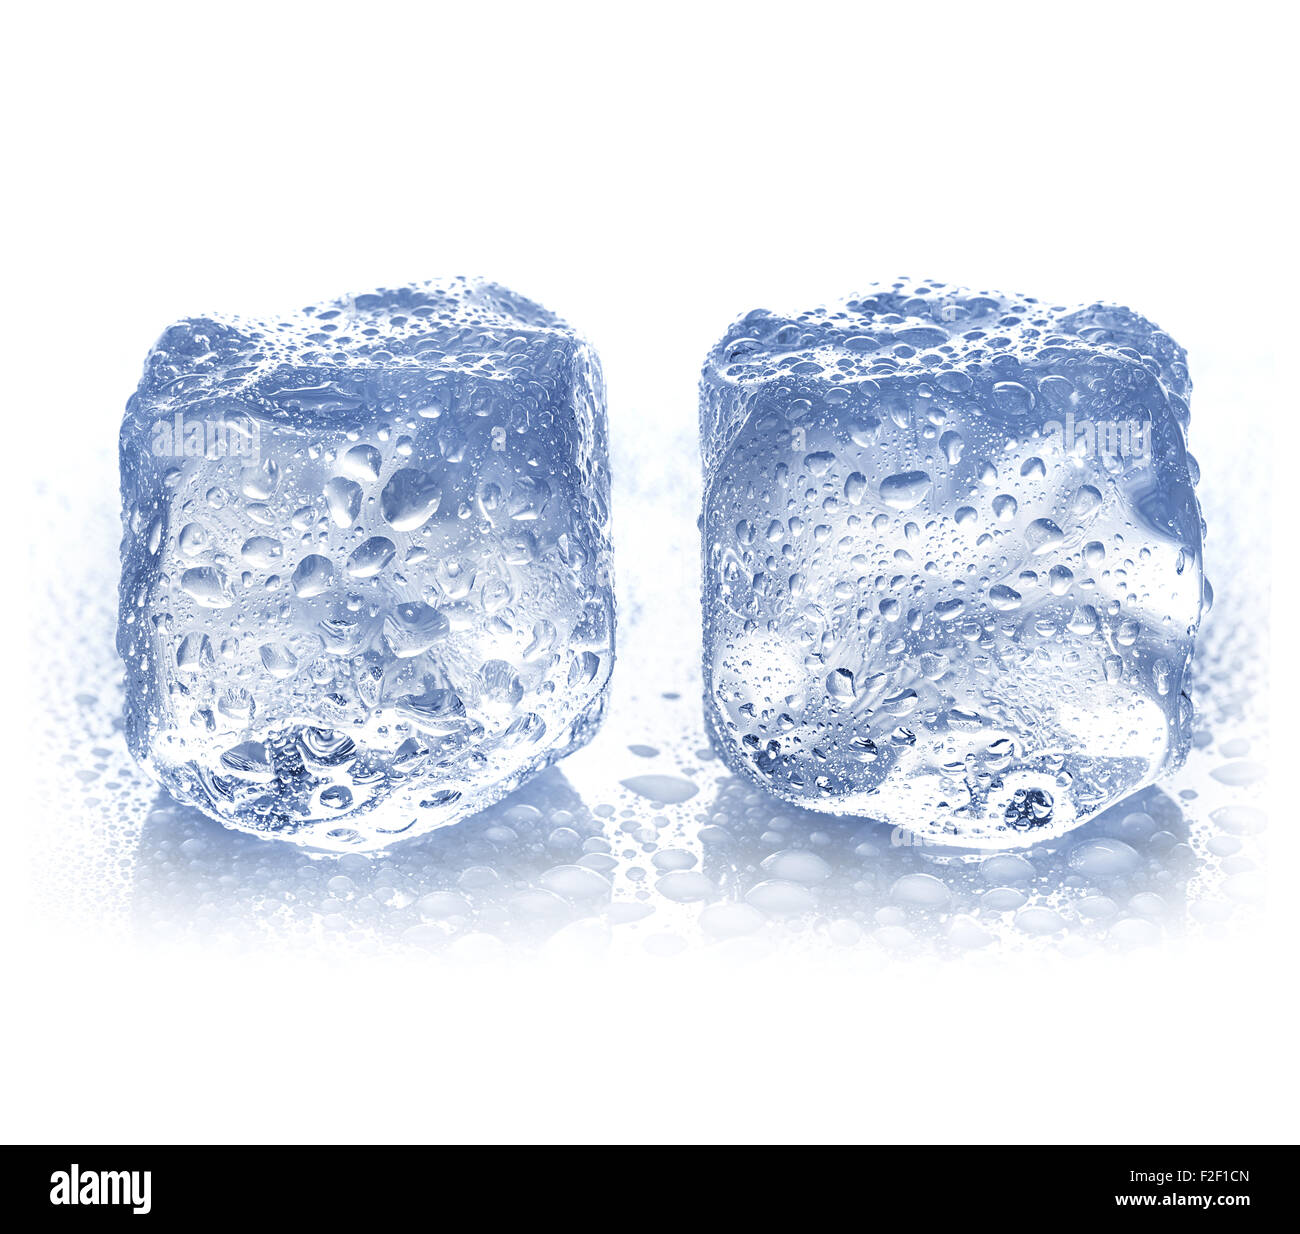 Cubo de hielo stock de ilustración. Ilustración de blanco